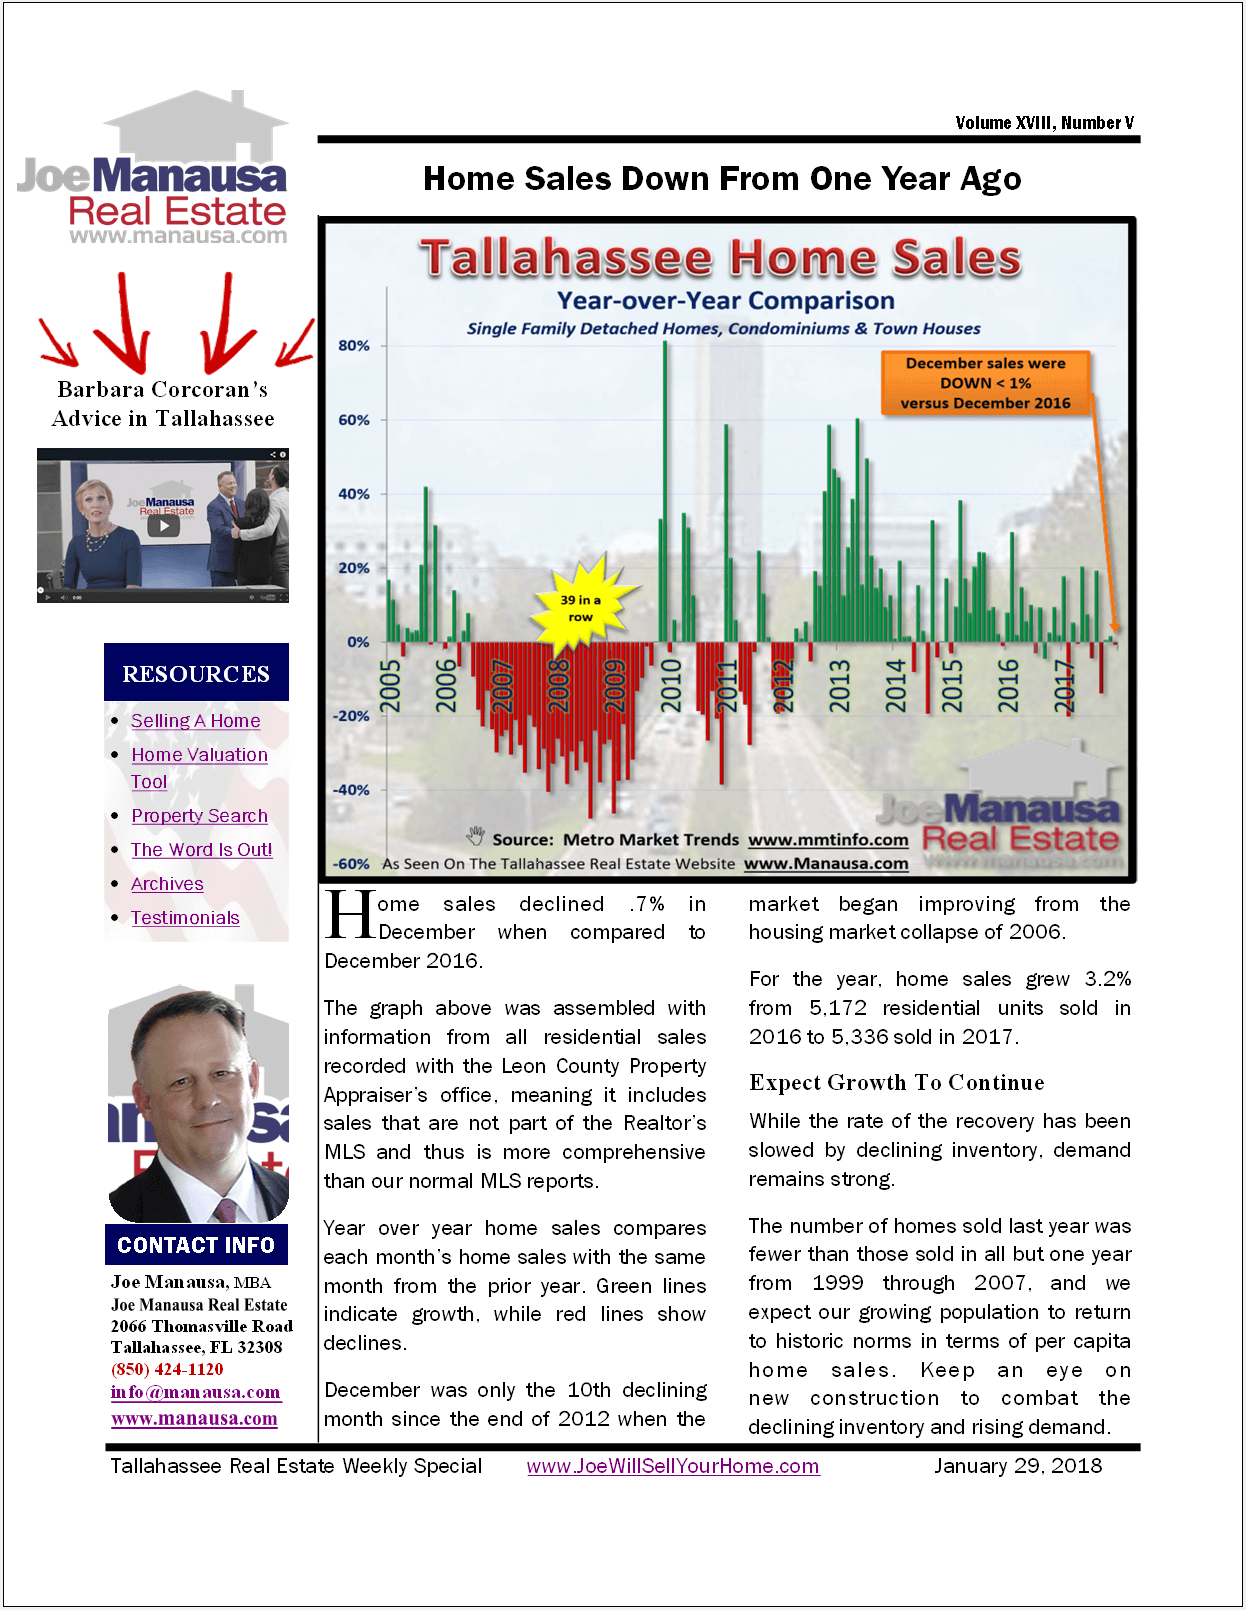 Home Sales Up Despite December Decline